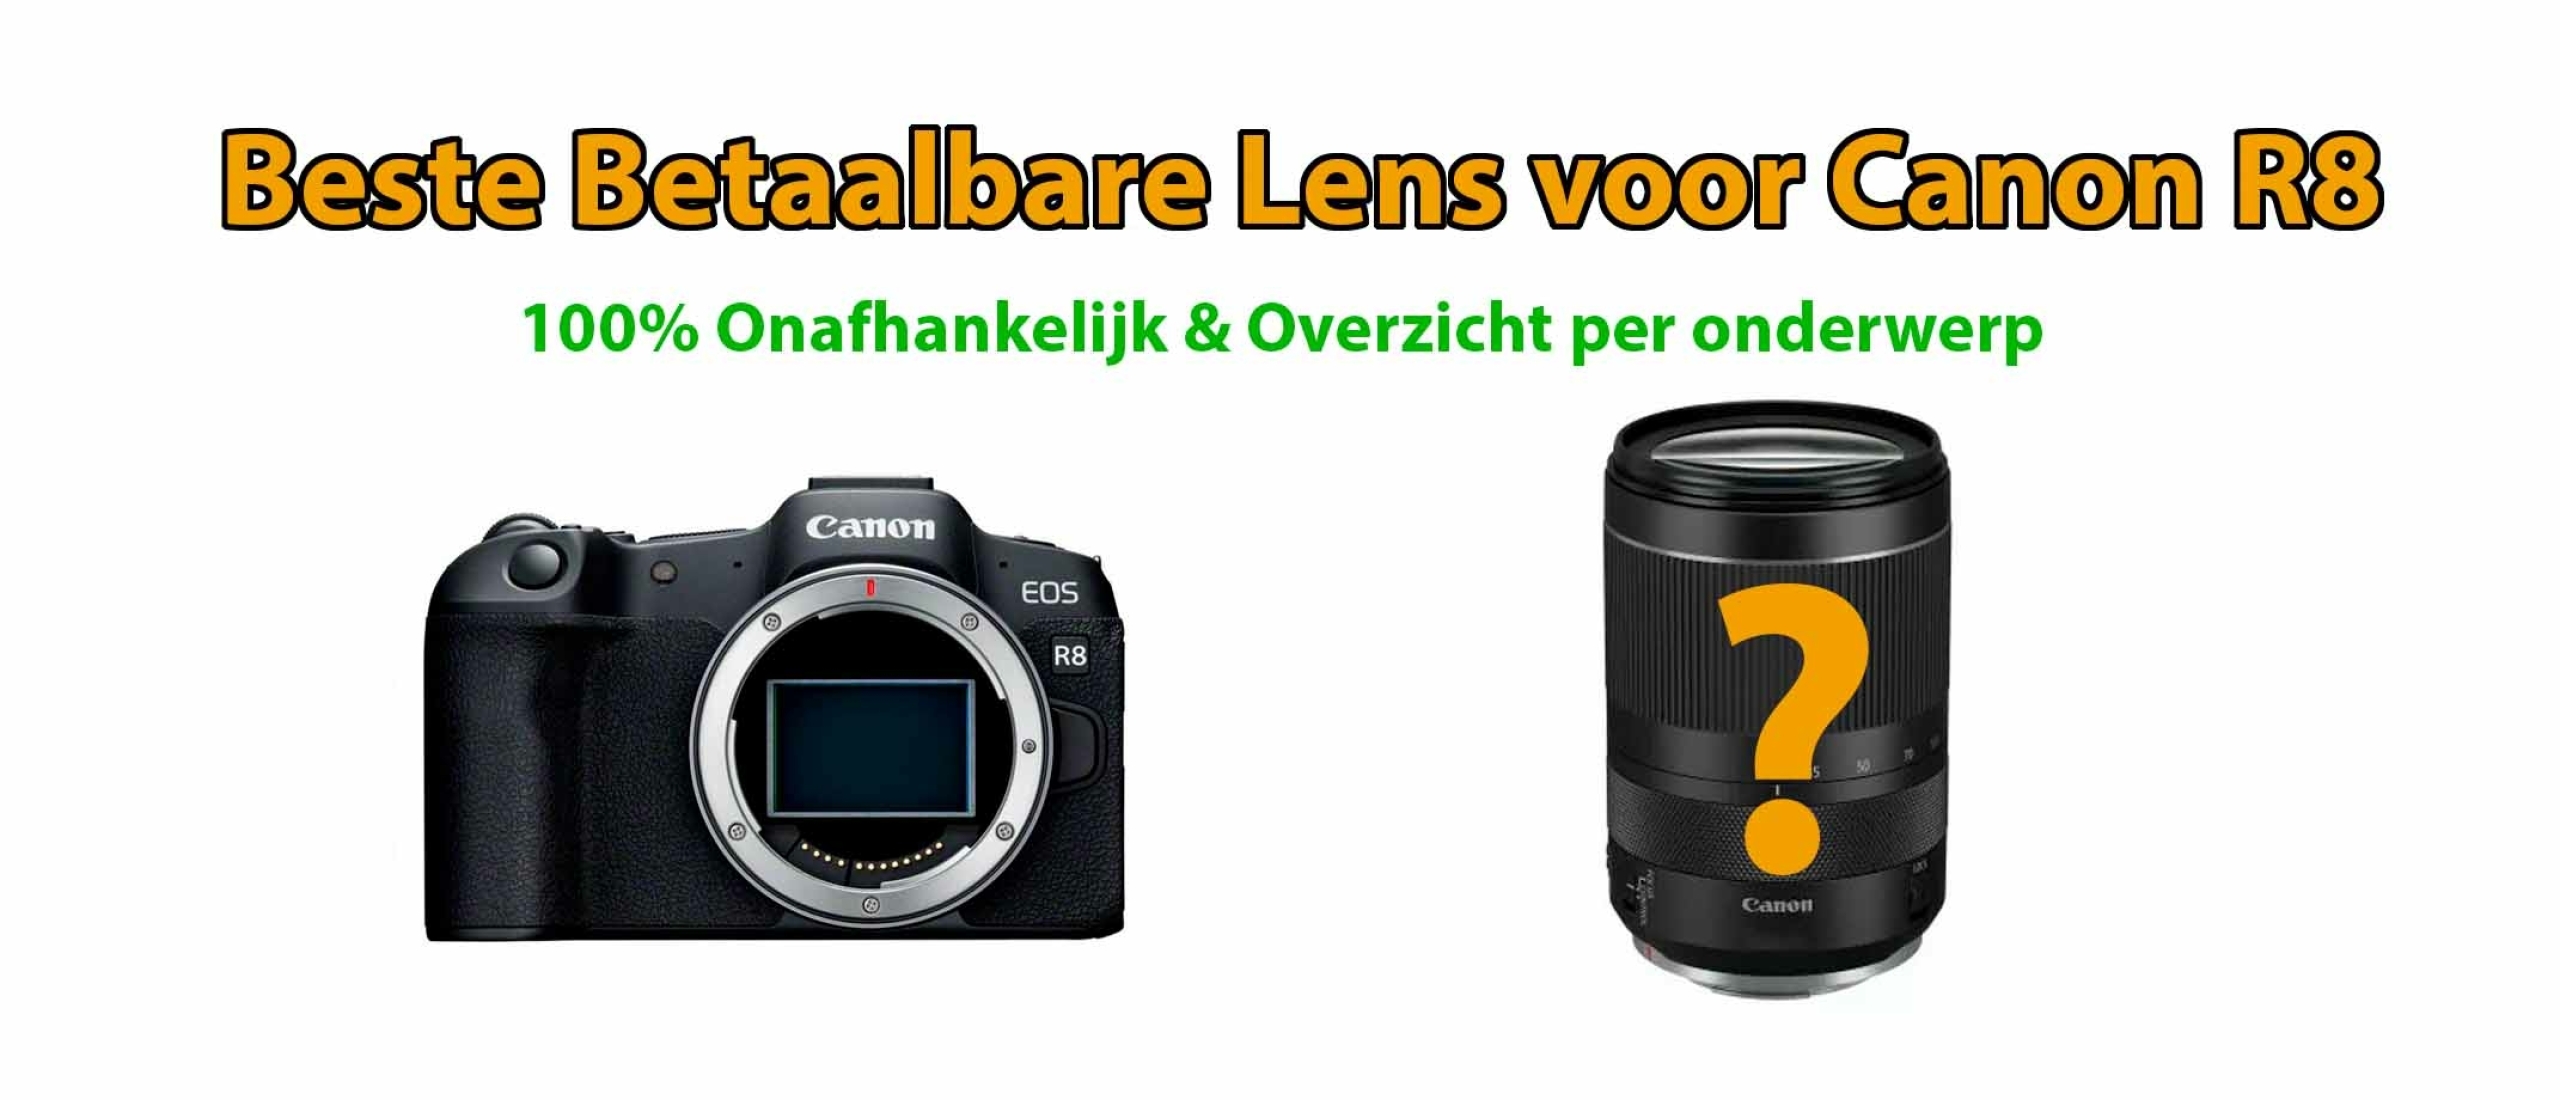 Beste betaalbare lens voor Canon EOS R8 systeemcamera